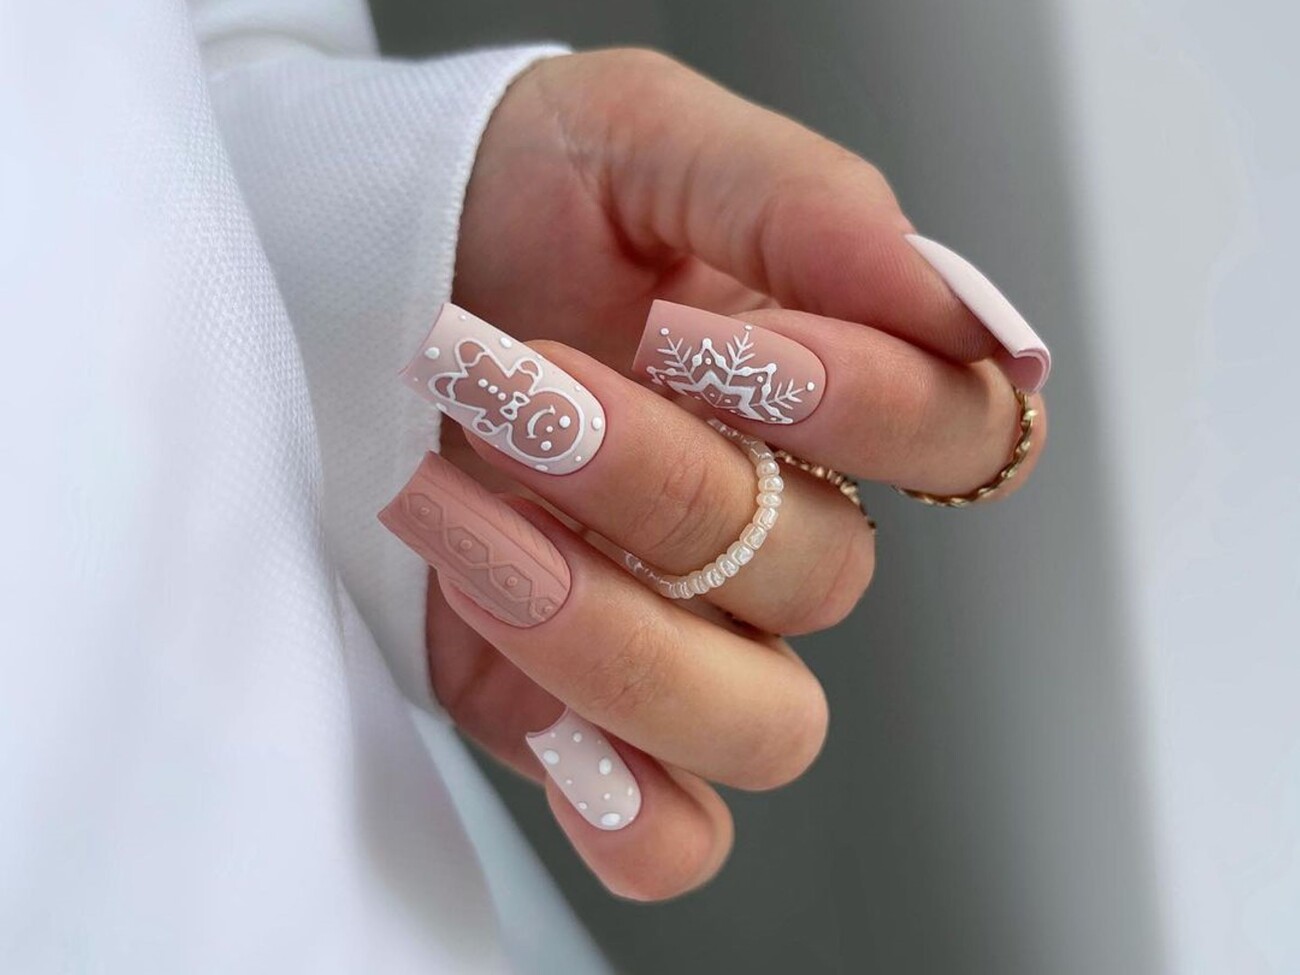 Самый красивый дизайн ногтей 2019 года из Instagram